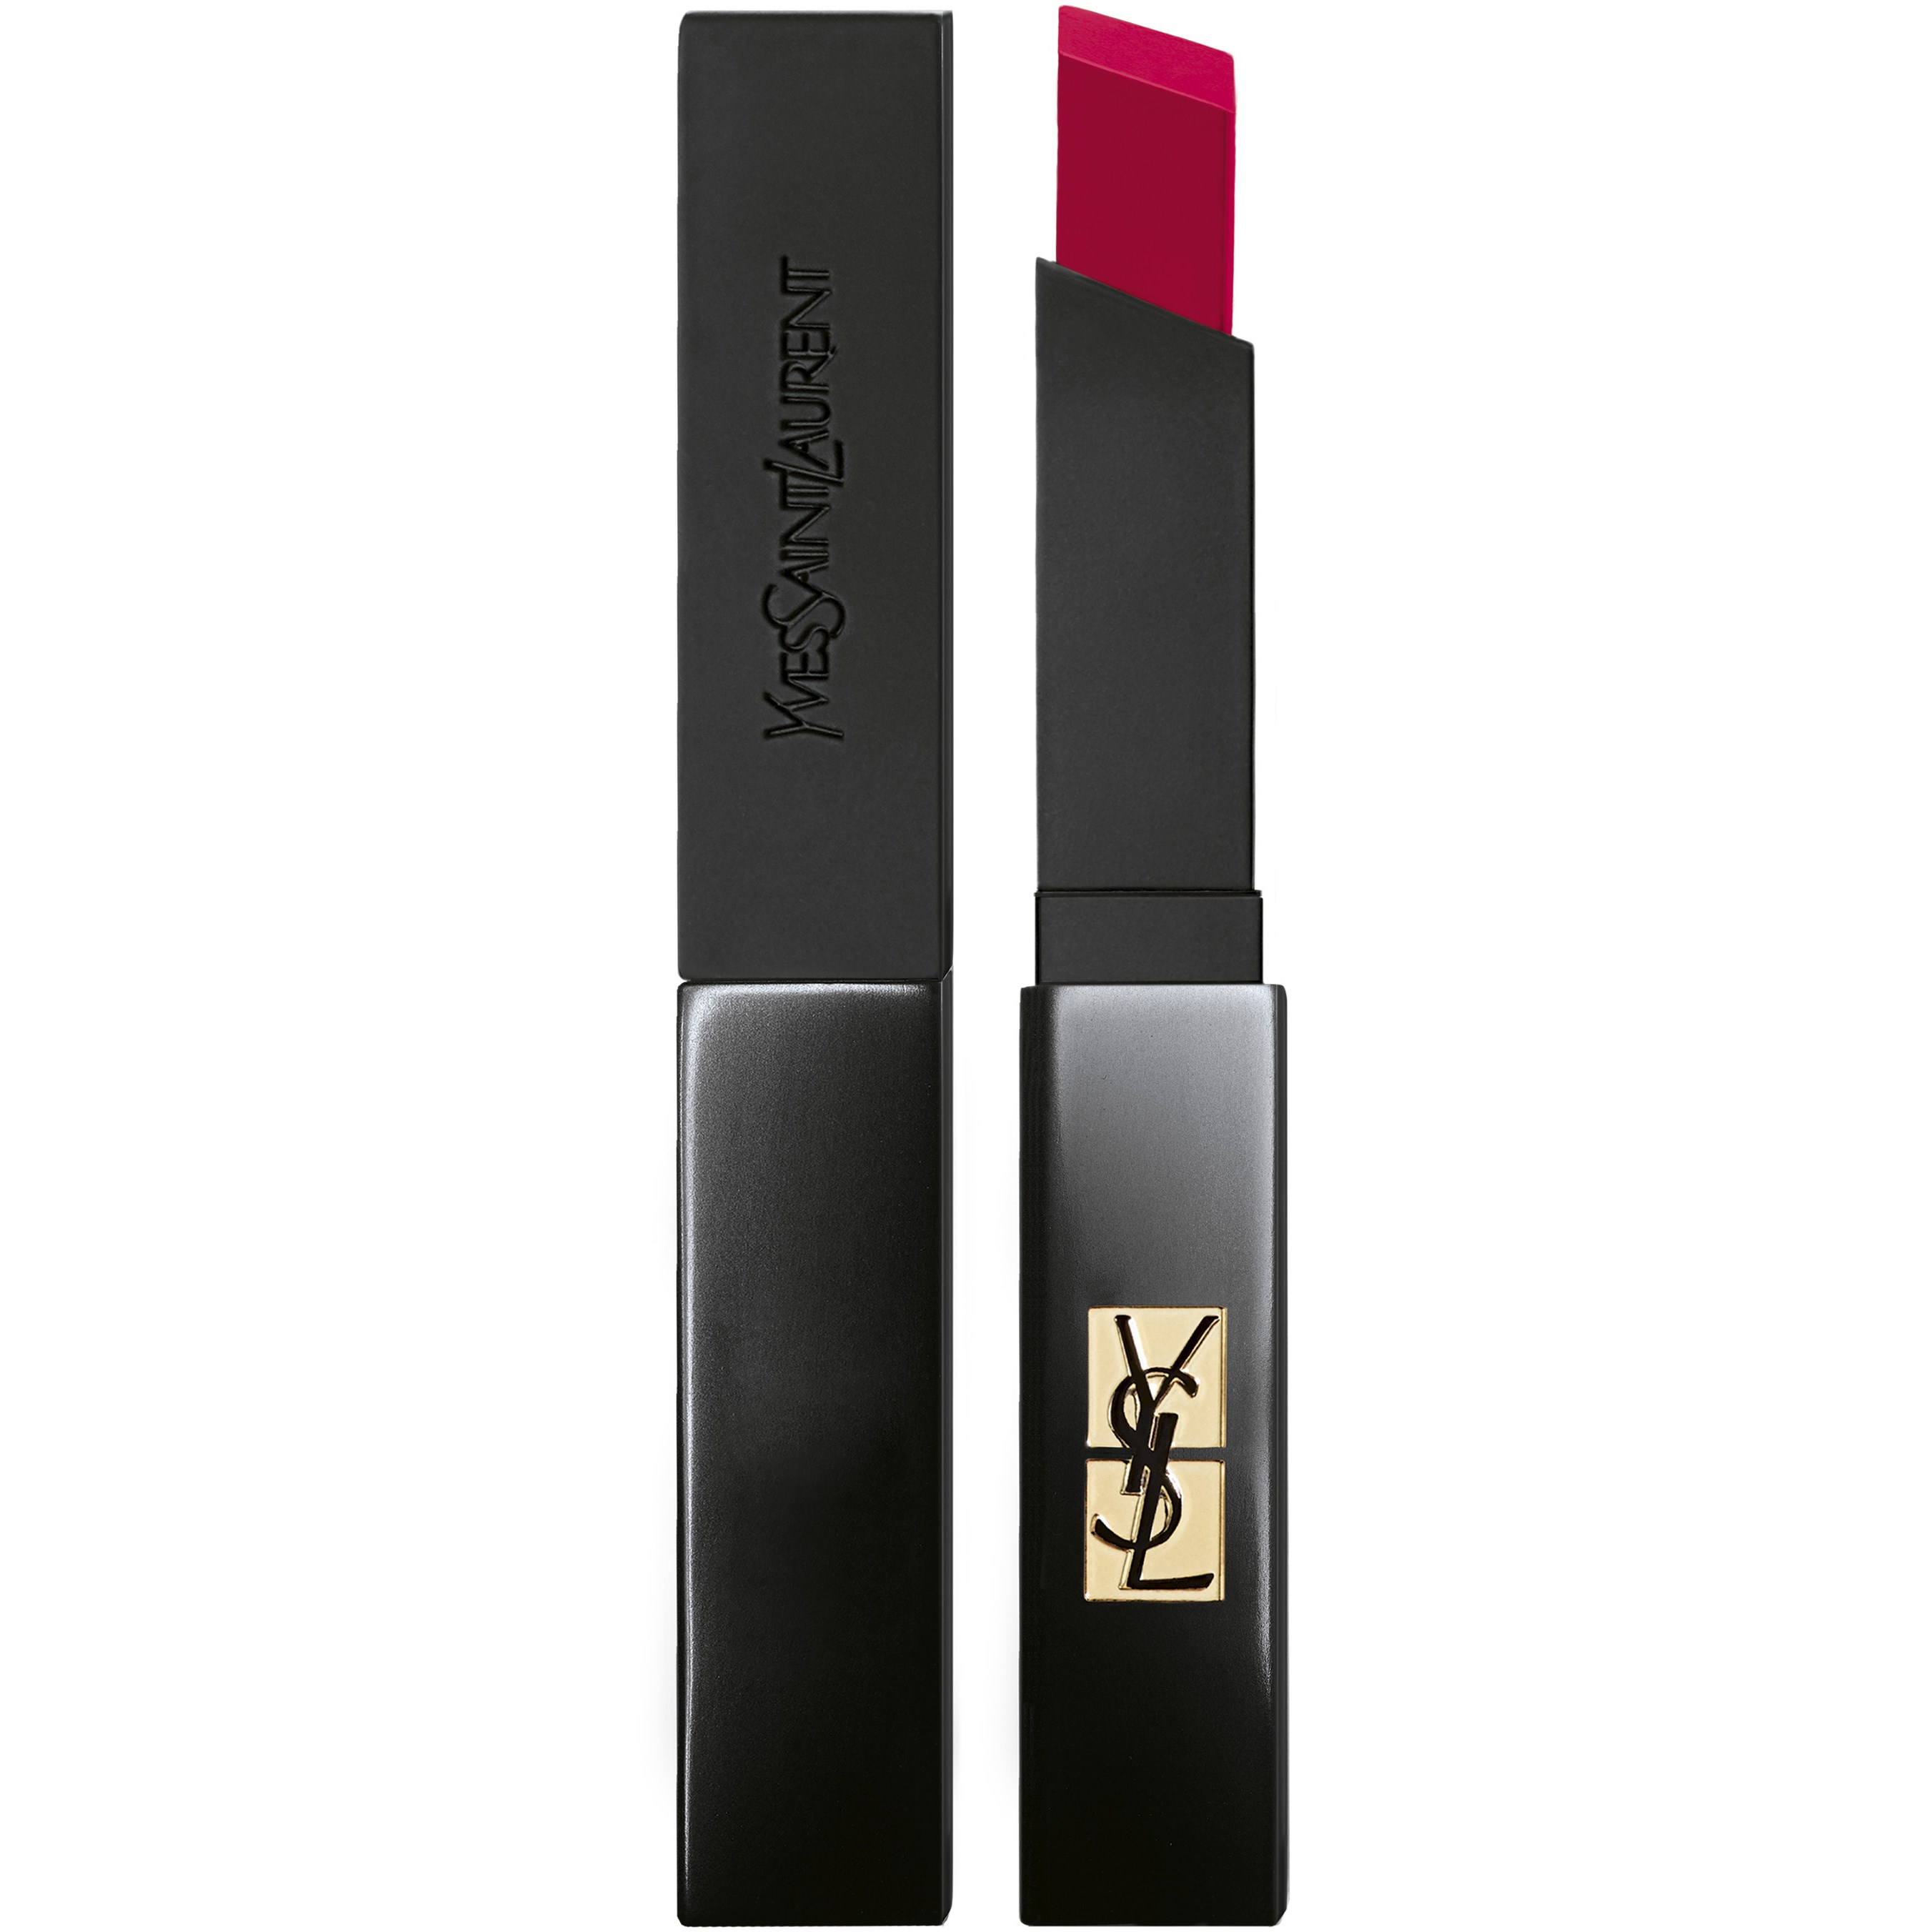 Yves Saint Laurent The Slim Velvet Radical Lipstick 306